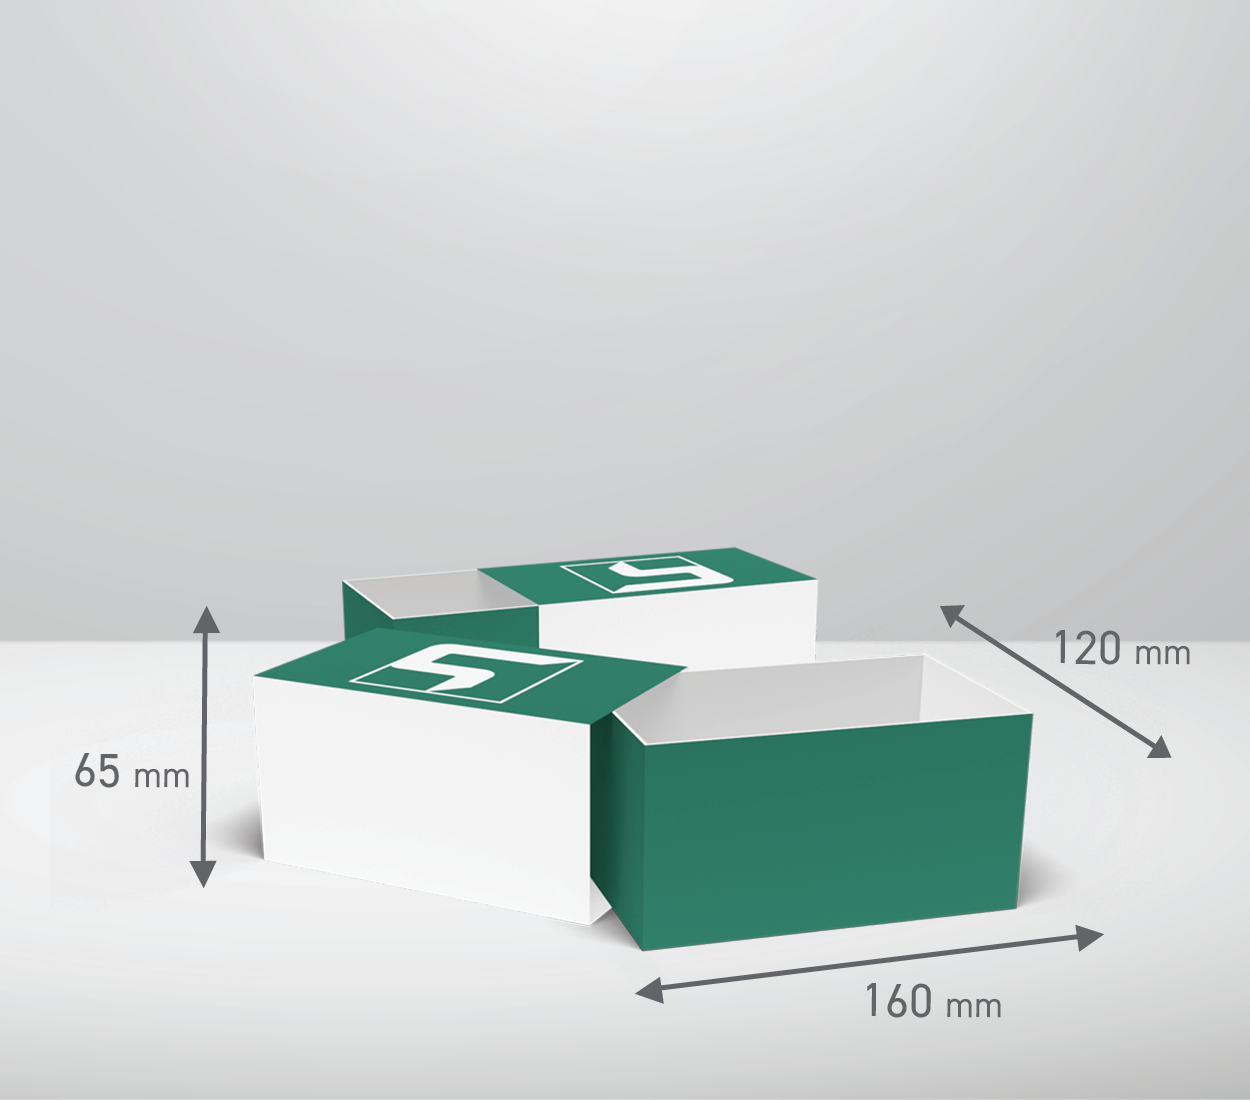 Izvlečna škatla: 160x120x65 mm (D1)